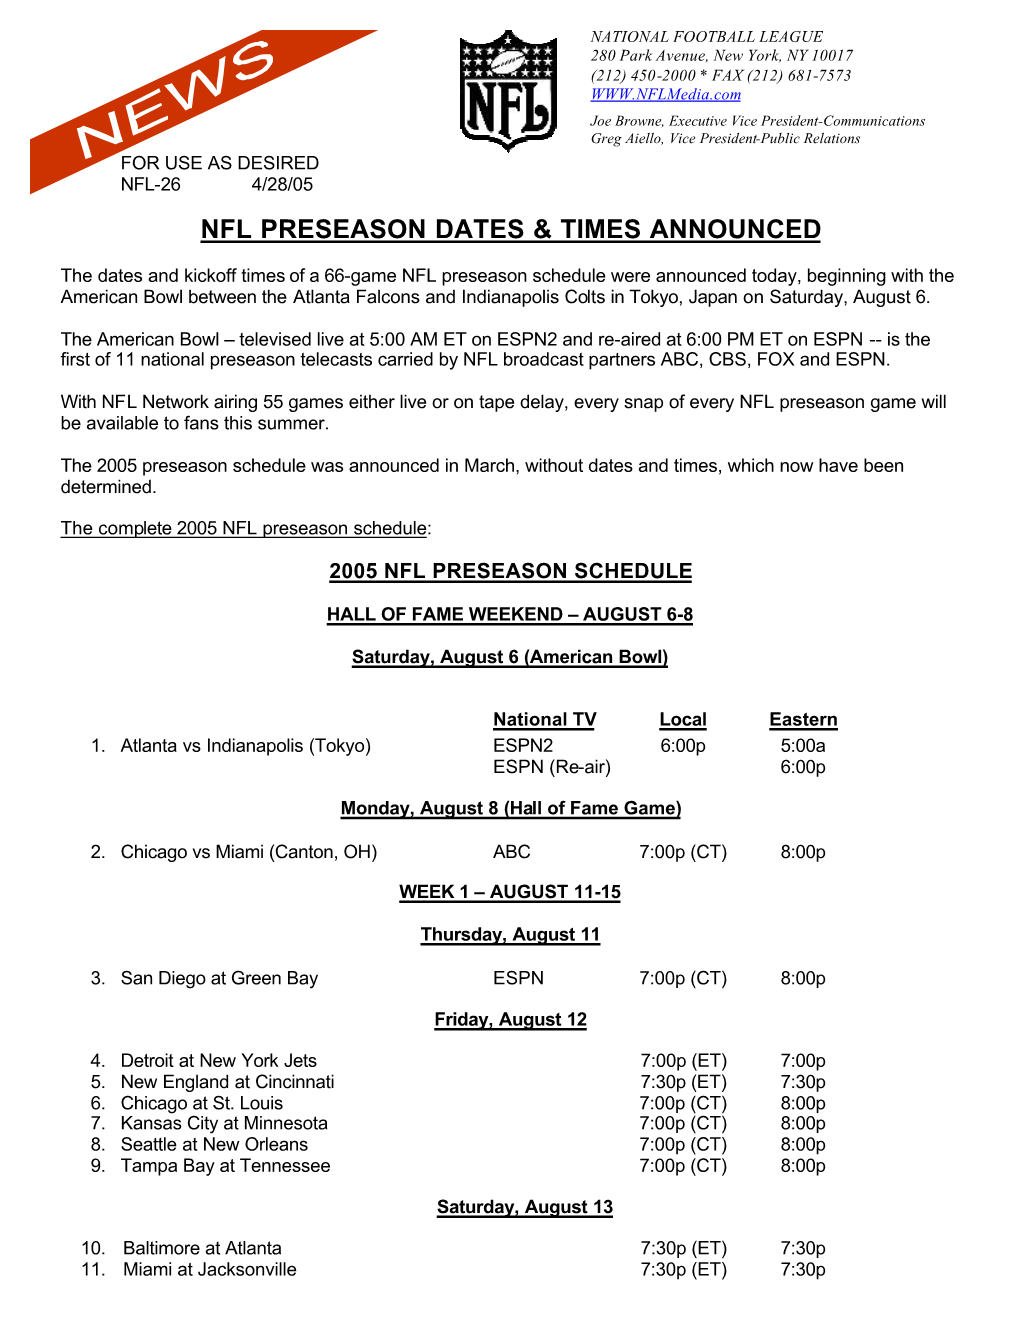 Preseason Times Dates2